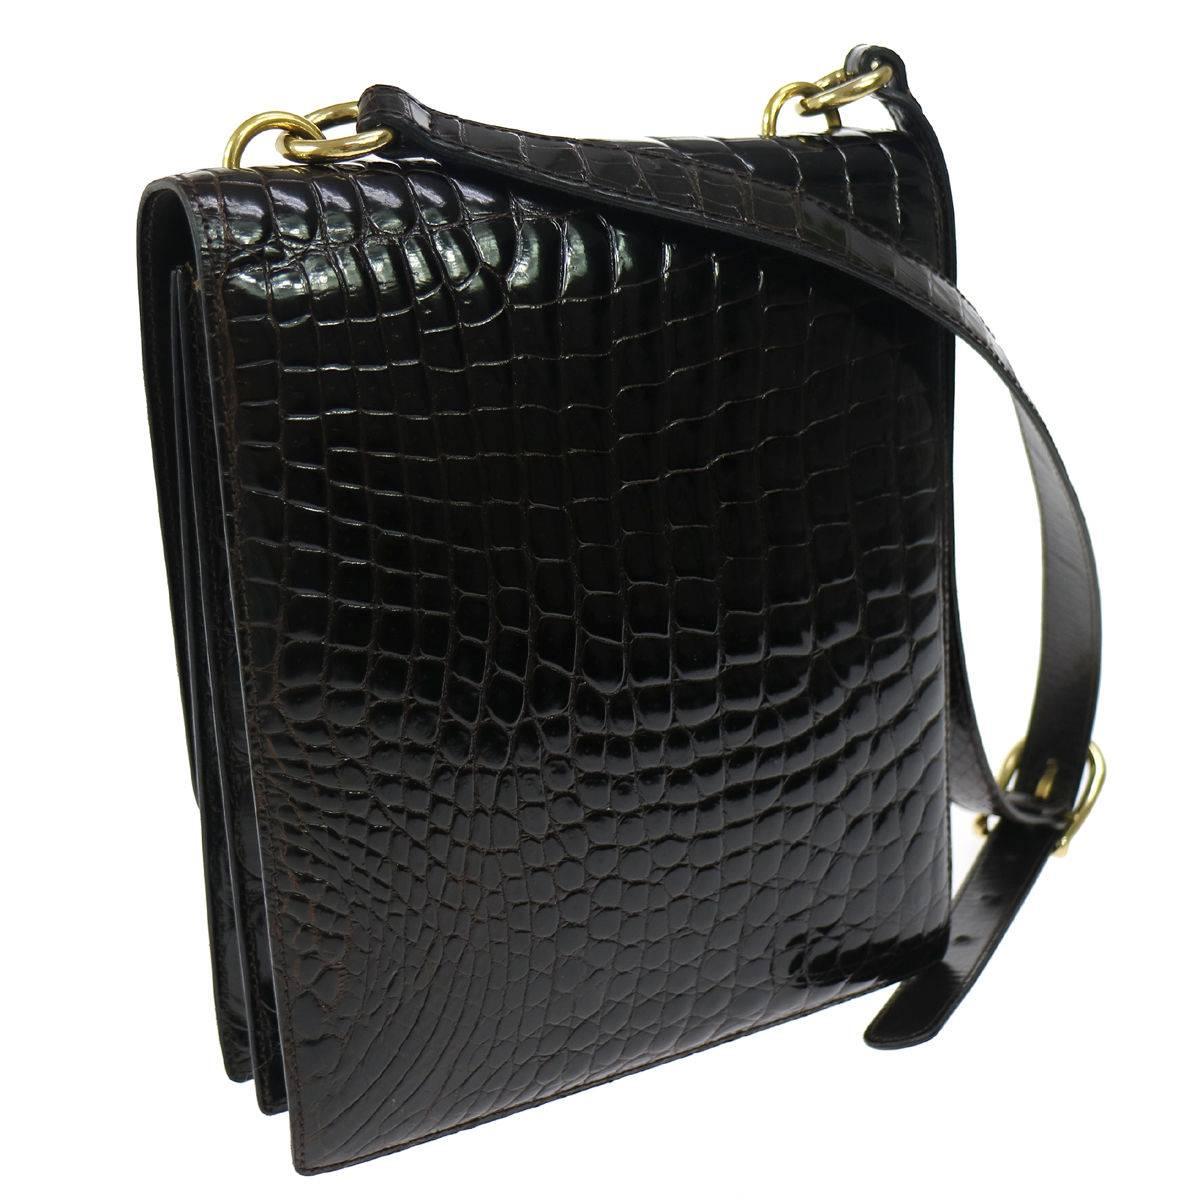 Black Gucci Vintage Croc Leather Gold GG Charm Evening Shoulder Flap Bag in Dust Bag